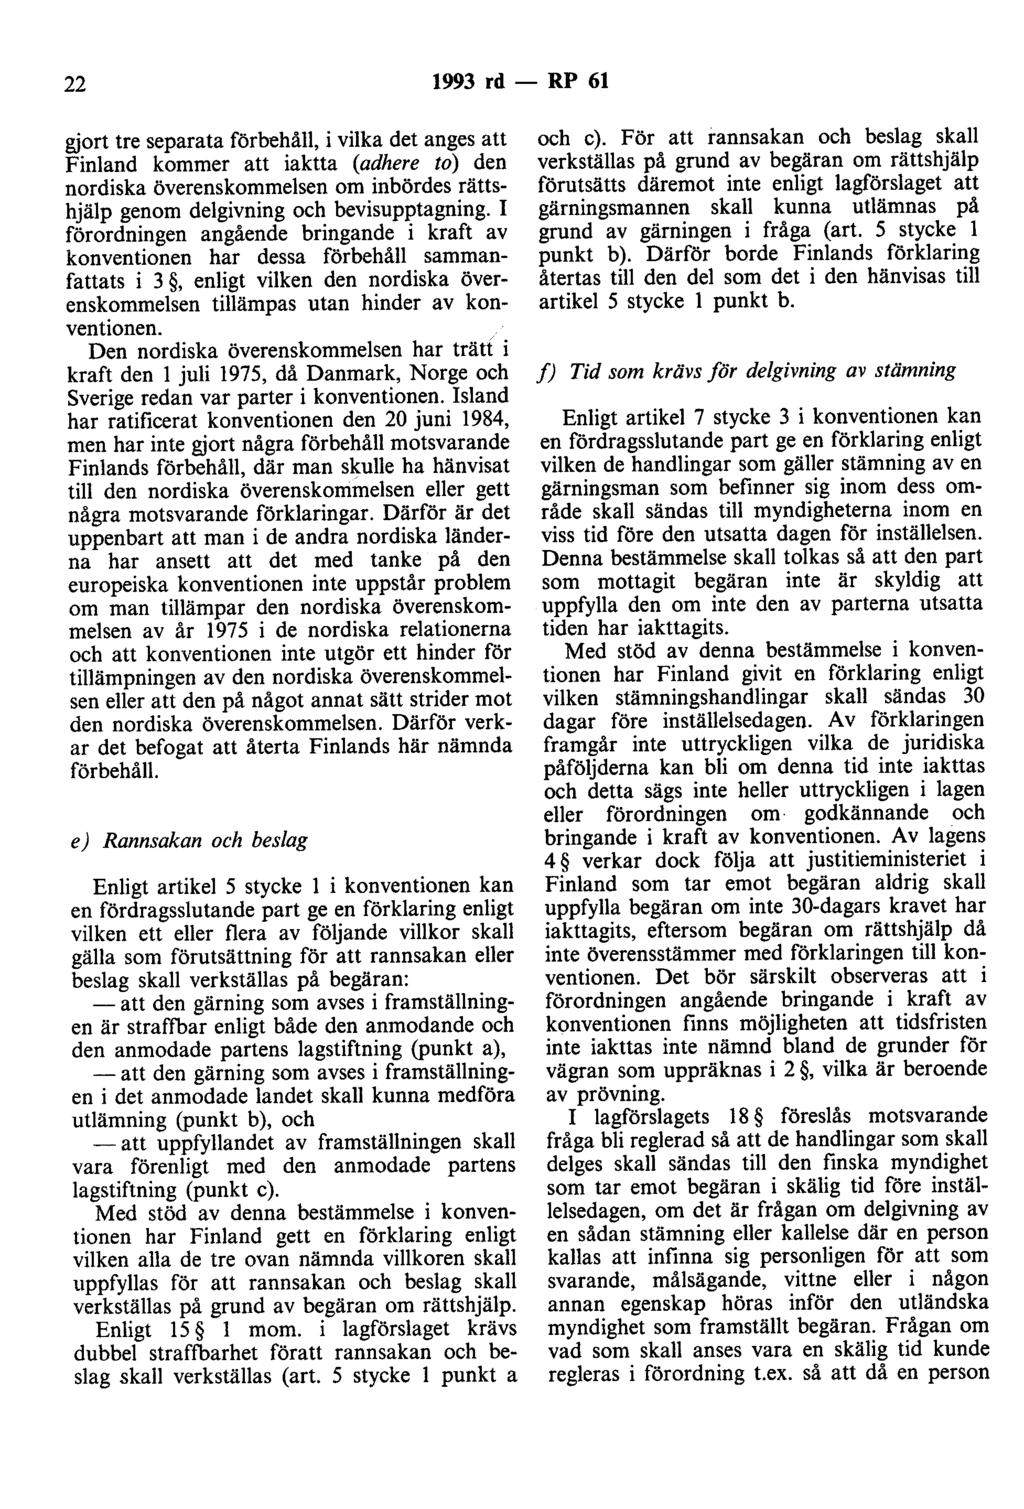 22 1993 rd - RP 61 gjort tre separata förbehåll, i vilka det anges att Finland kommer att iaktta (adhere to) den nordiska överenskommelsen om inbördes rättshjälp genom delgivning och bevisupptagning.